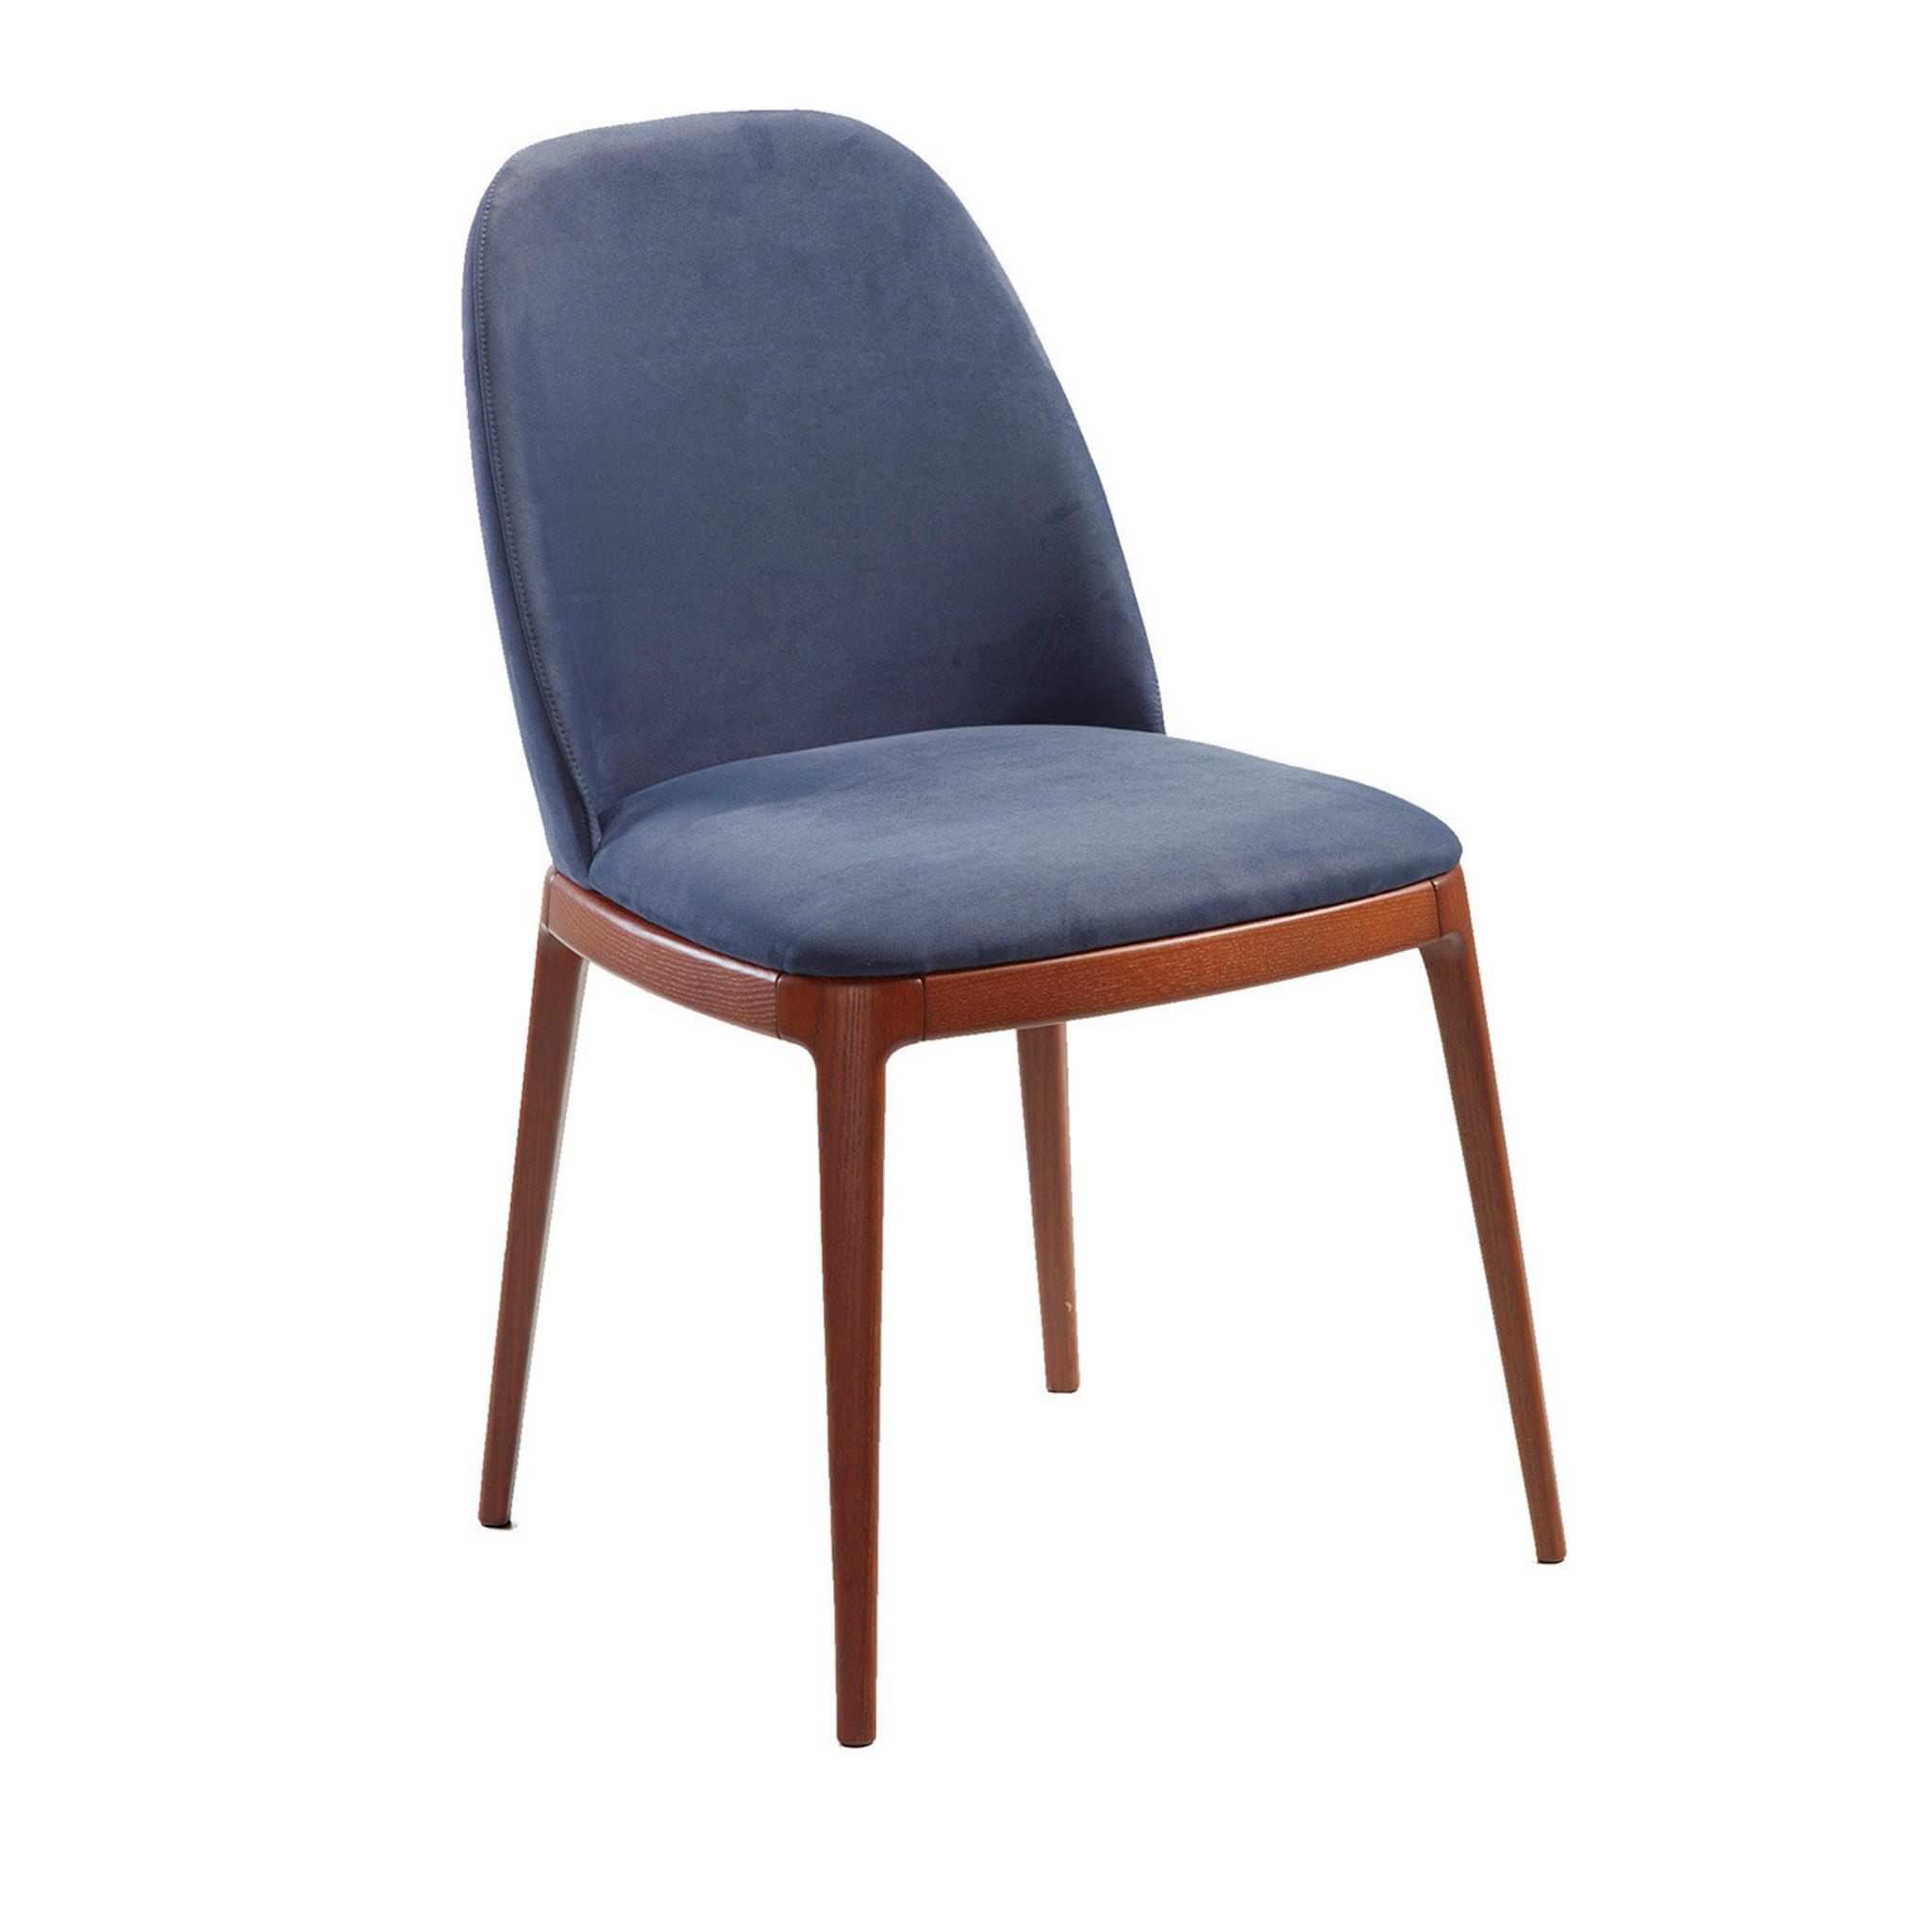 Breganze Blue Chair - Main view